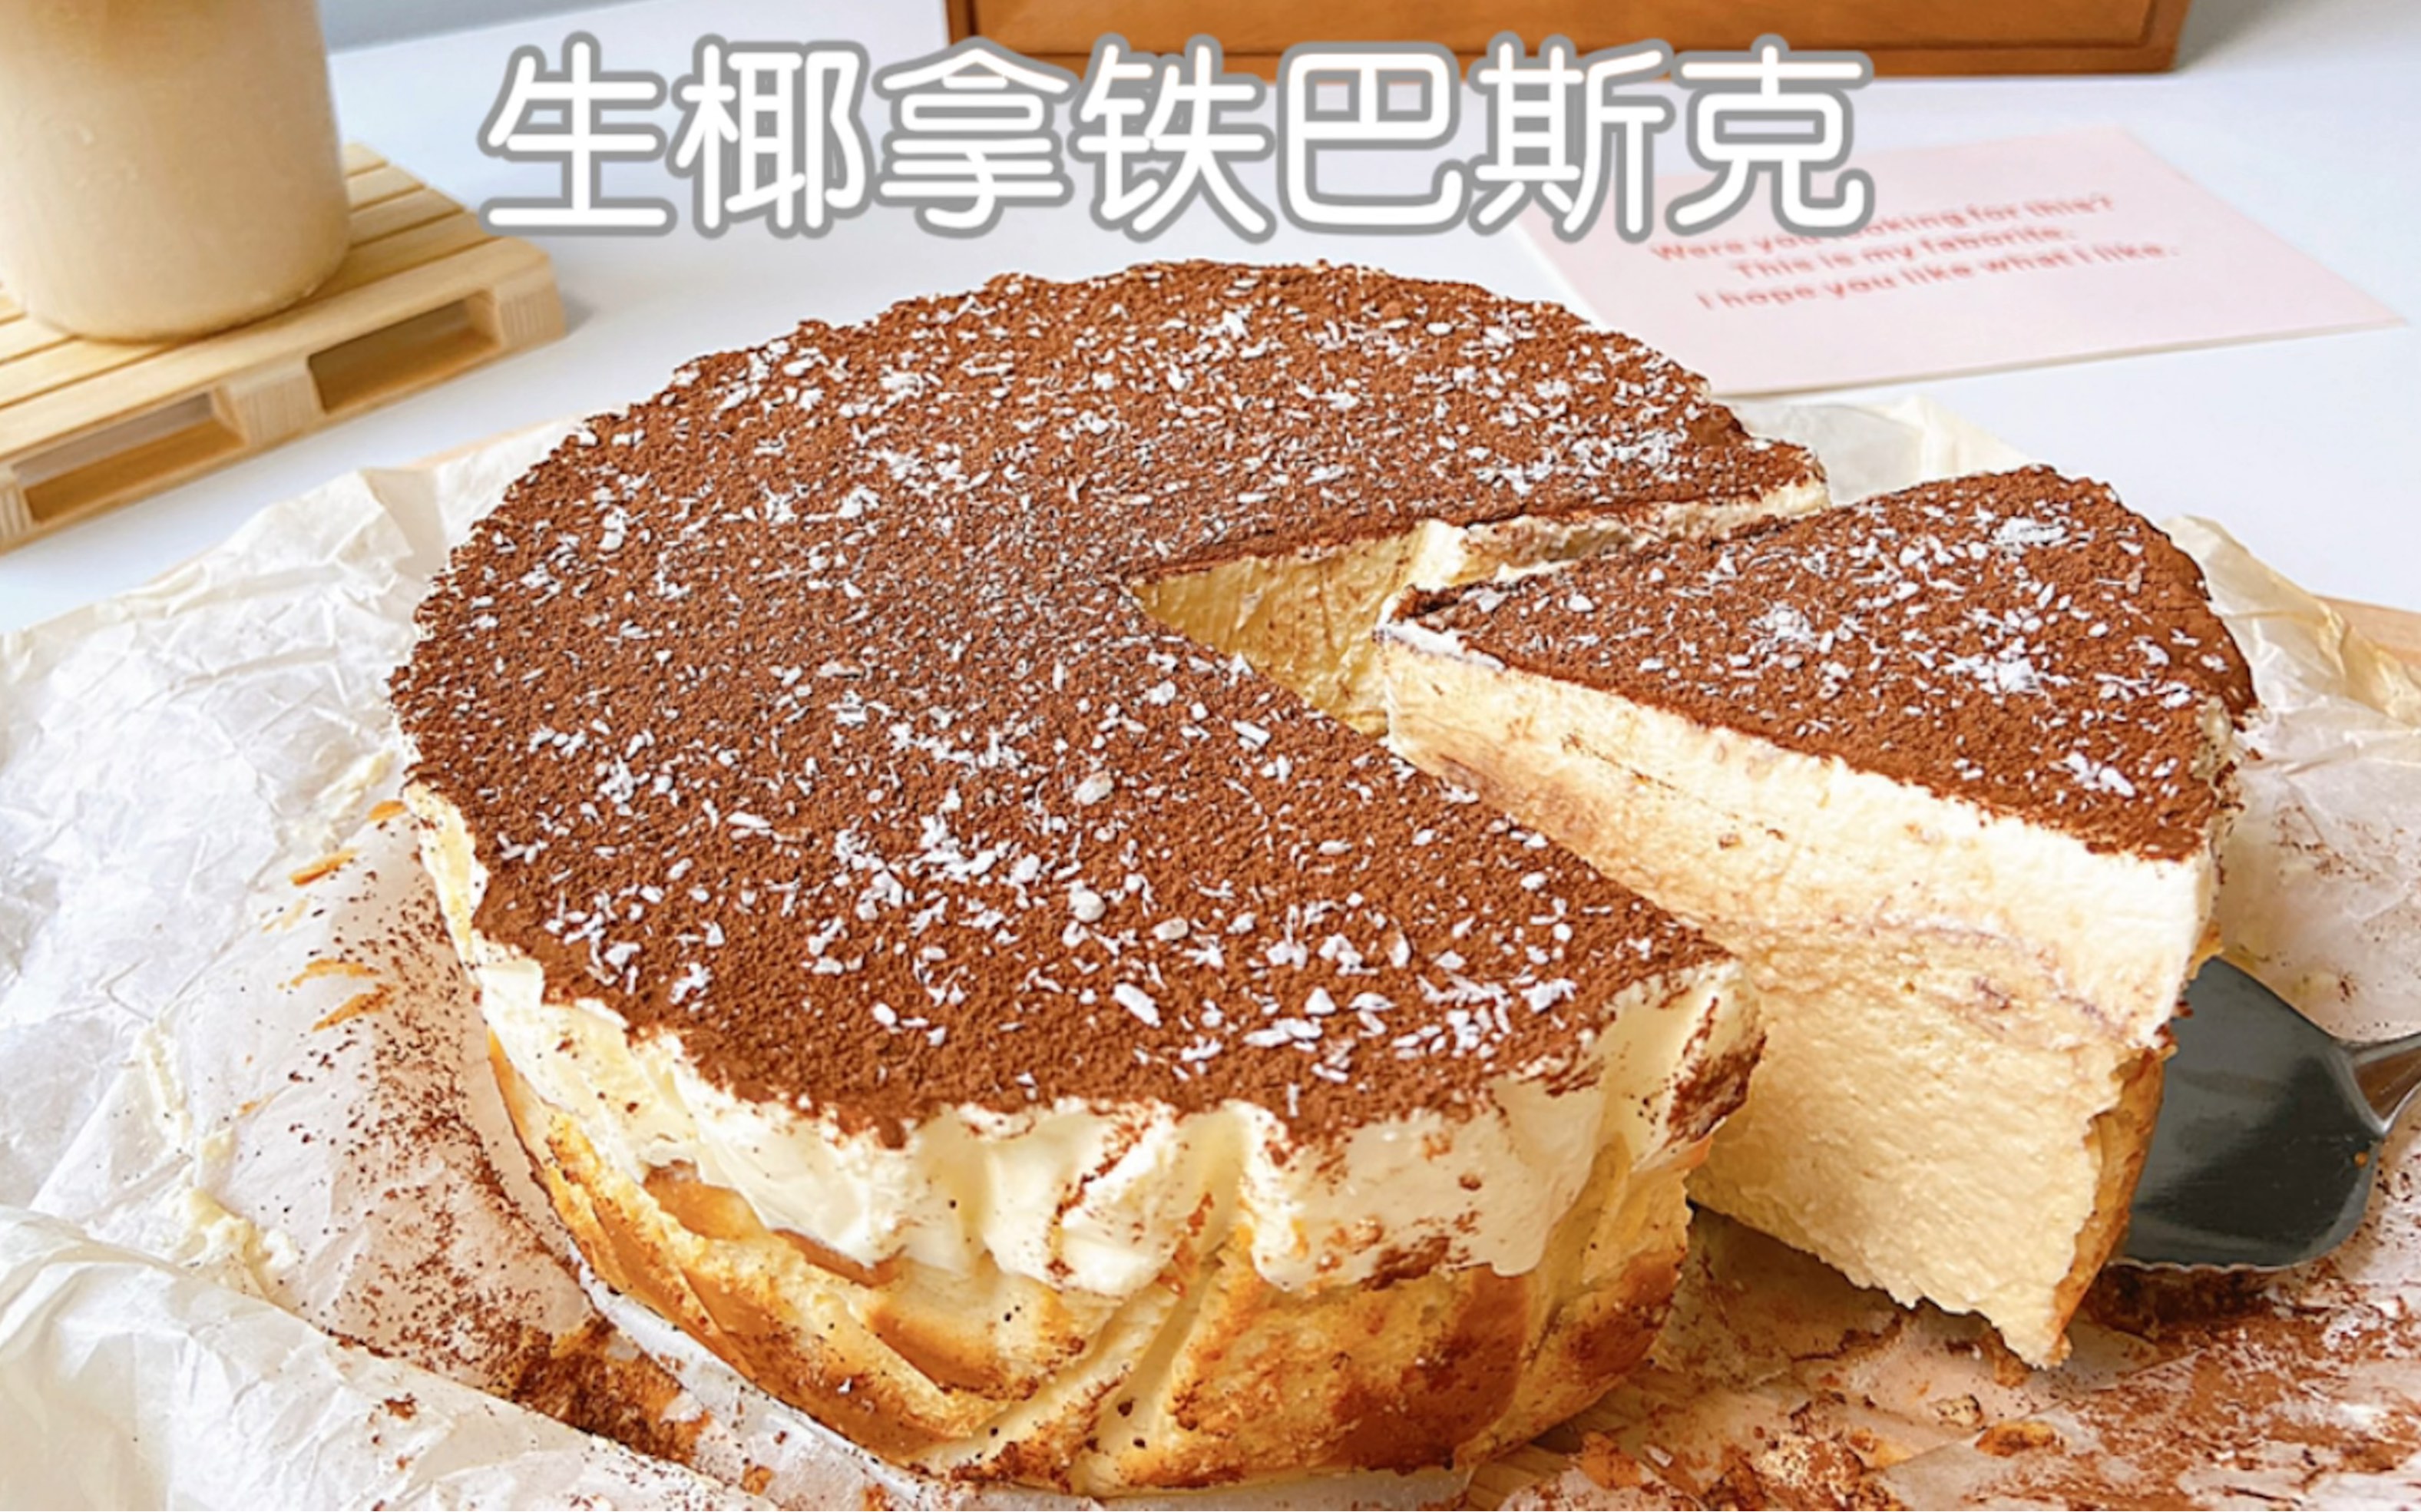 椰果香妃蛋糕/爆款蛋糕 ️不会卷就切块颜值也高?包含椰蓉、椰浆、椰果的椰香蛋糕 - 哔哩哔哩